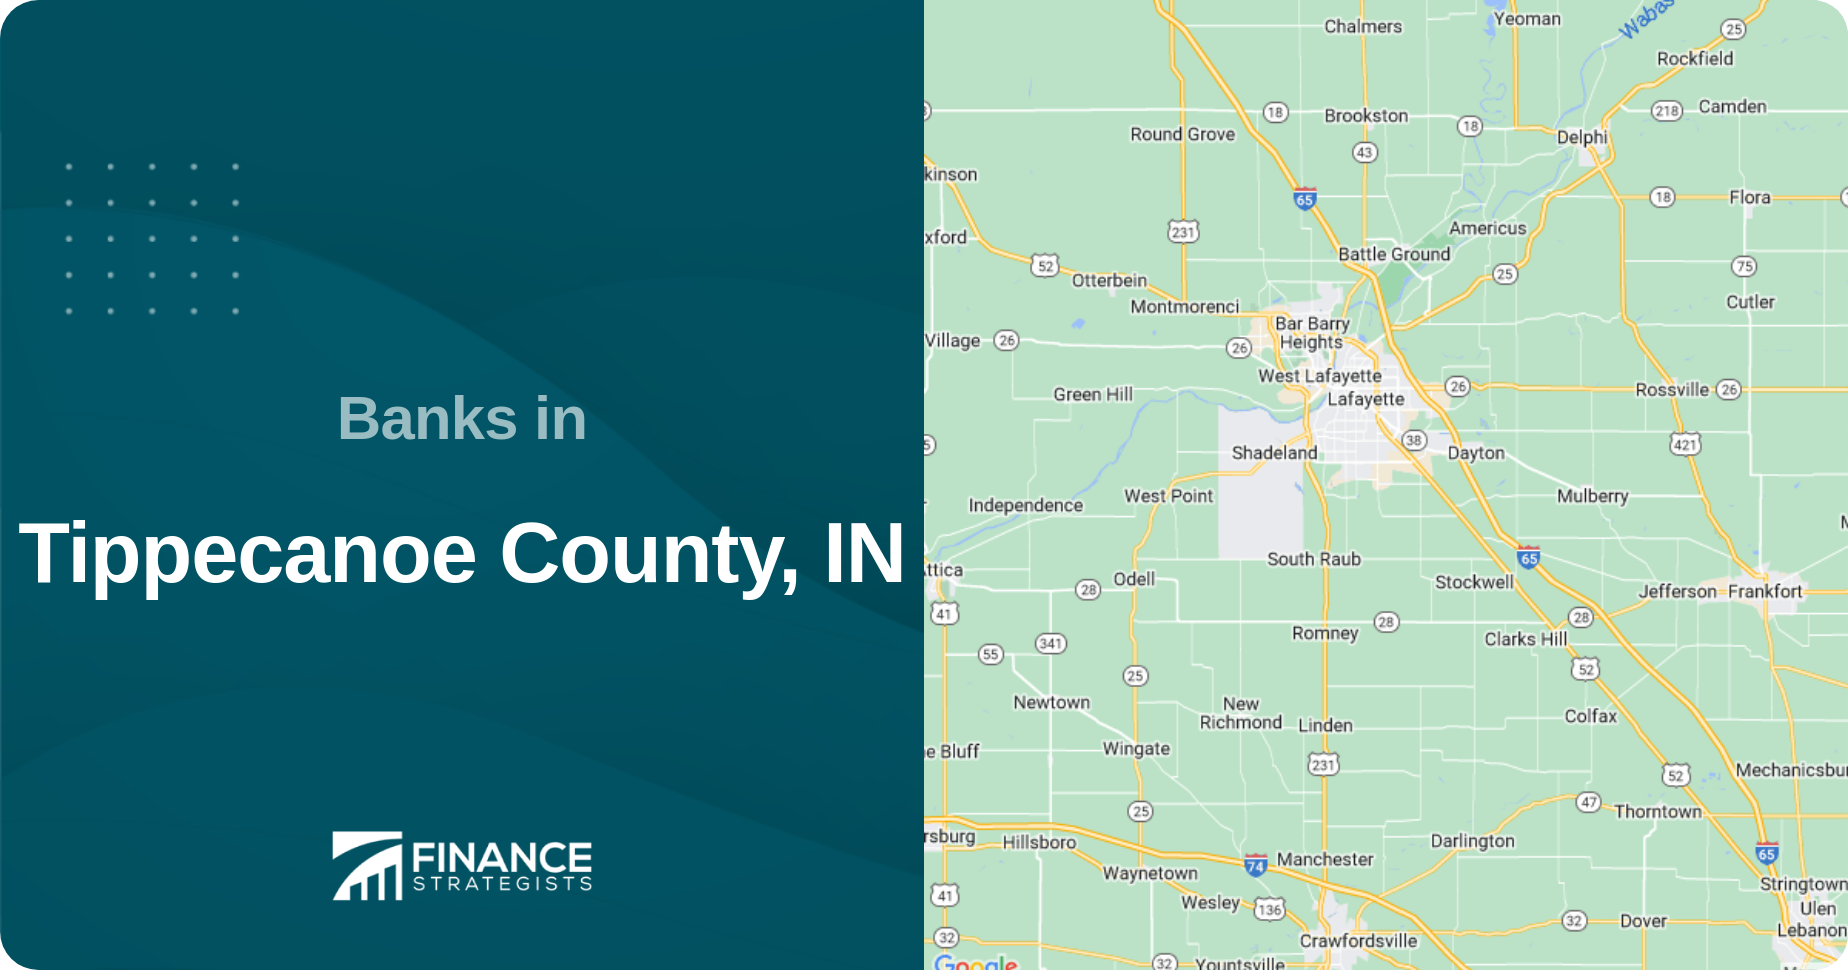 Banks in Tippecanoe County, IN